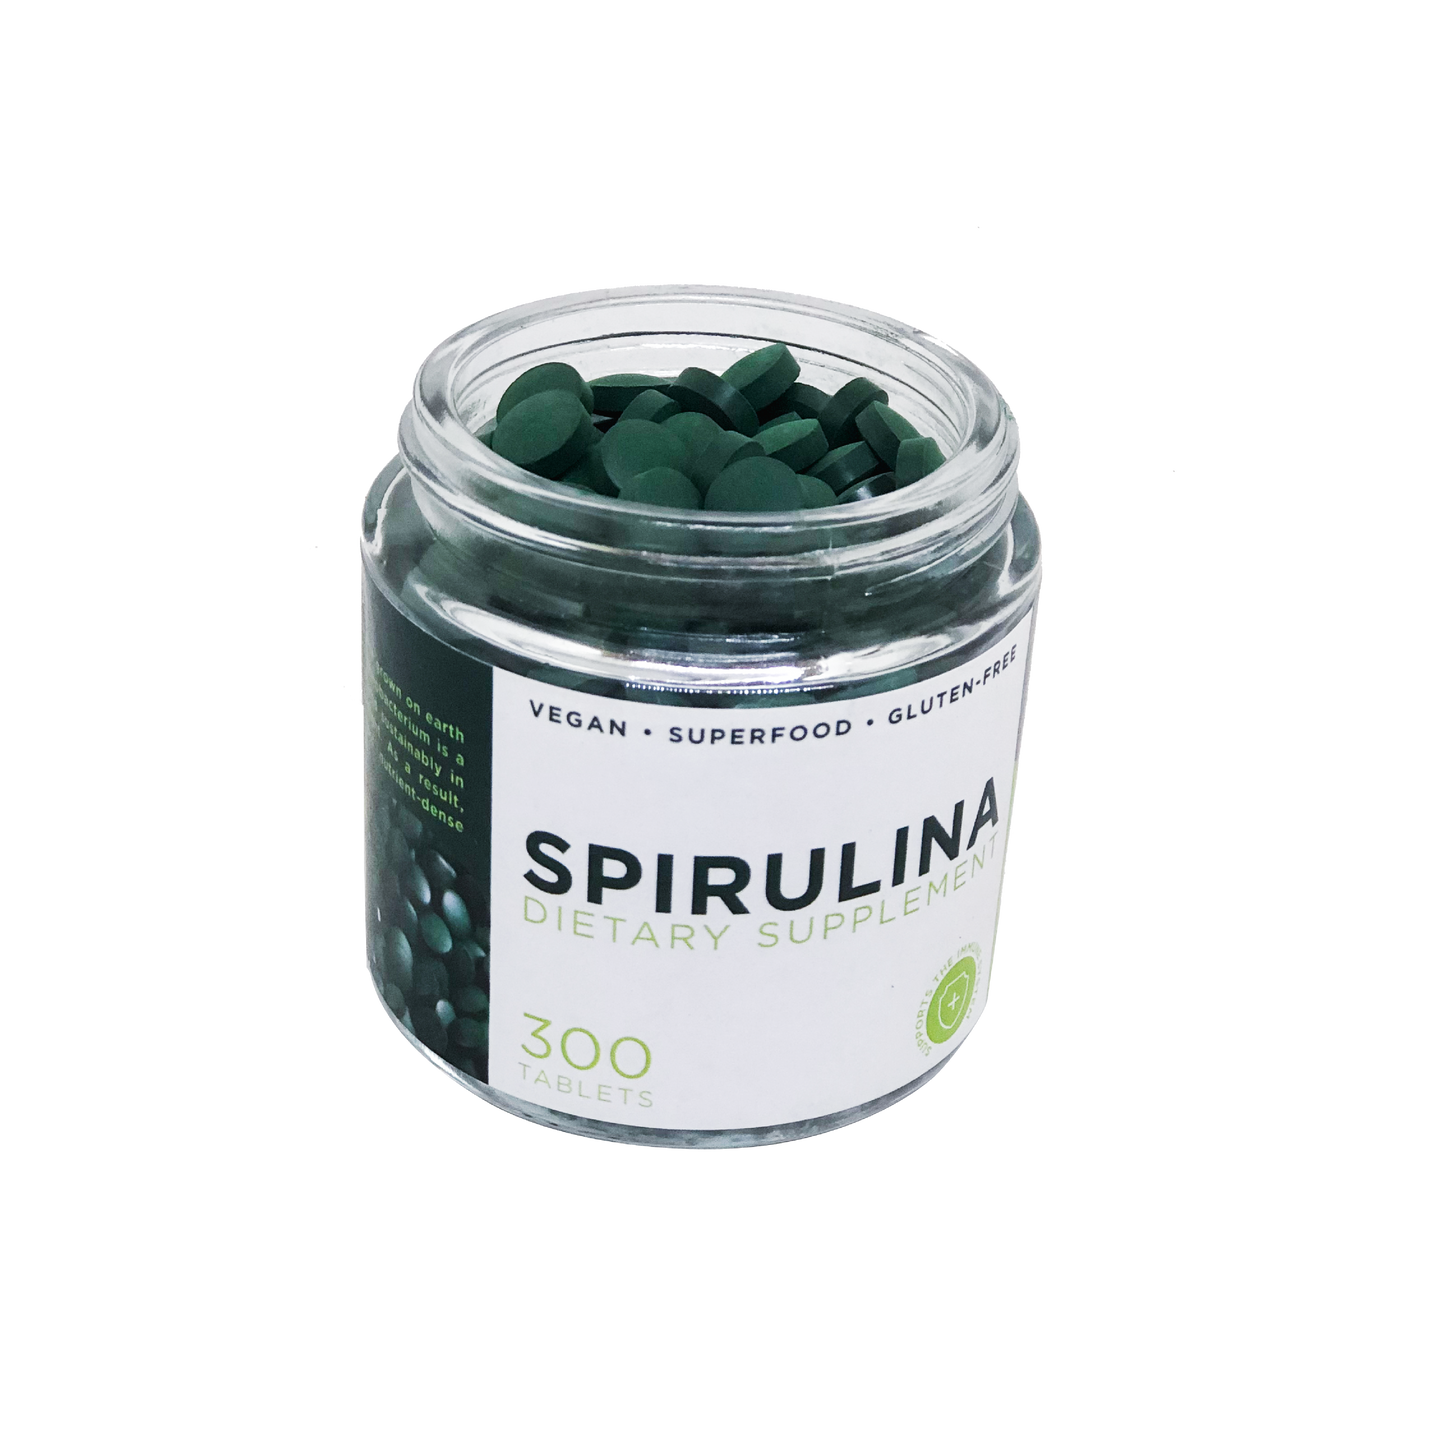 Spirulina - 300 tablets